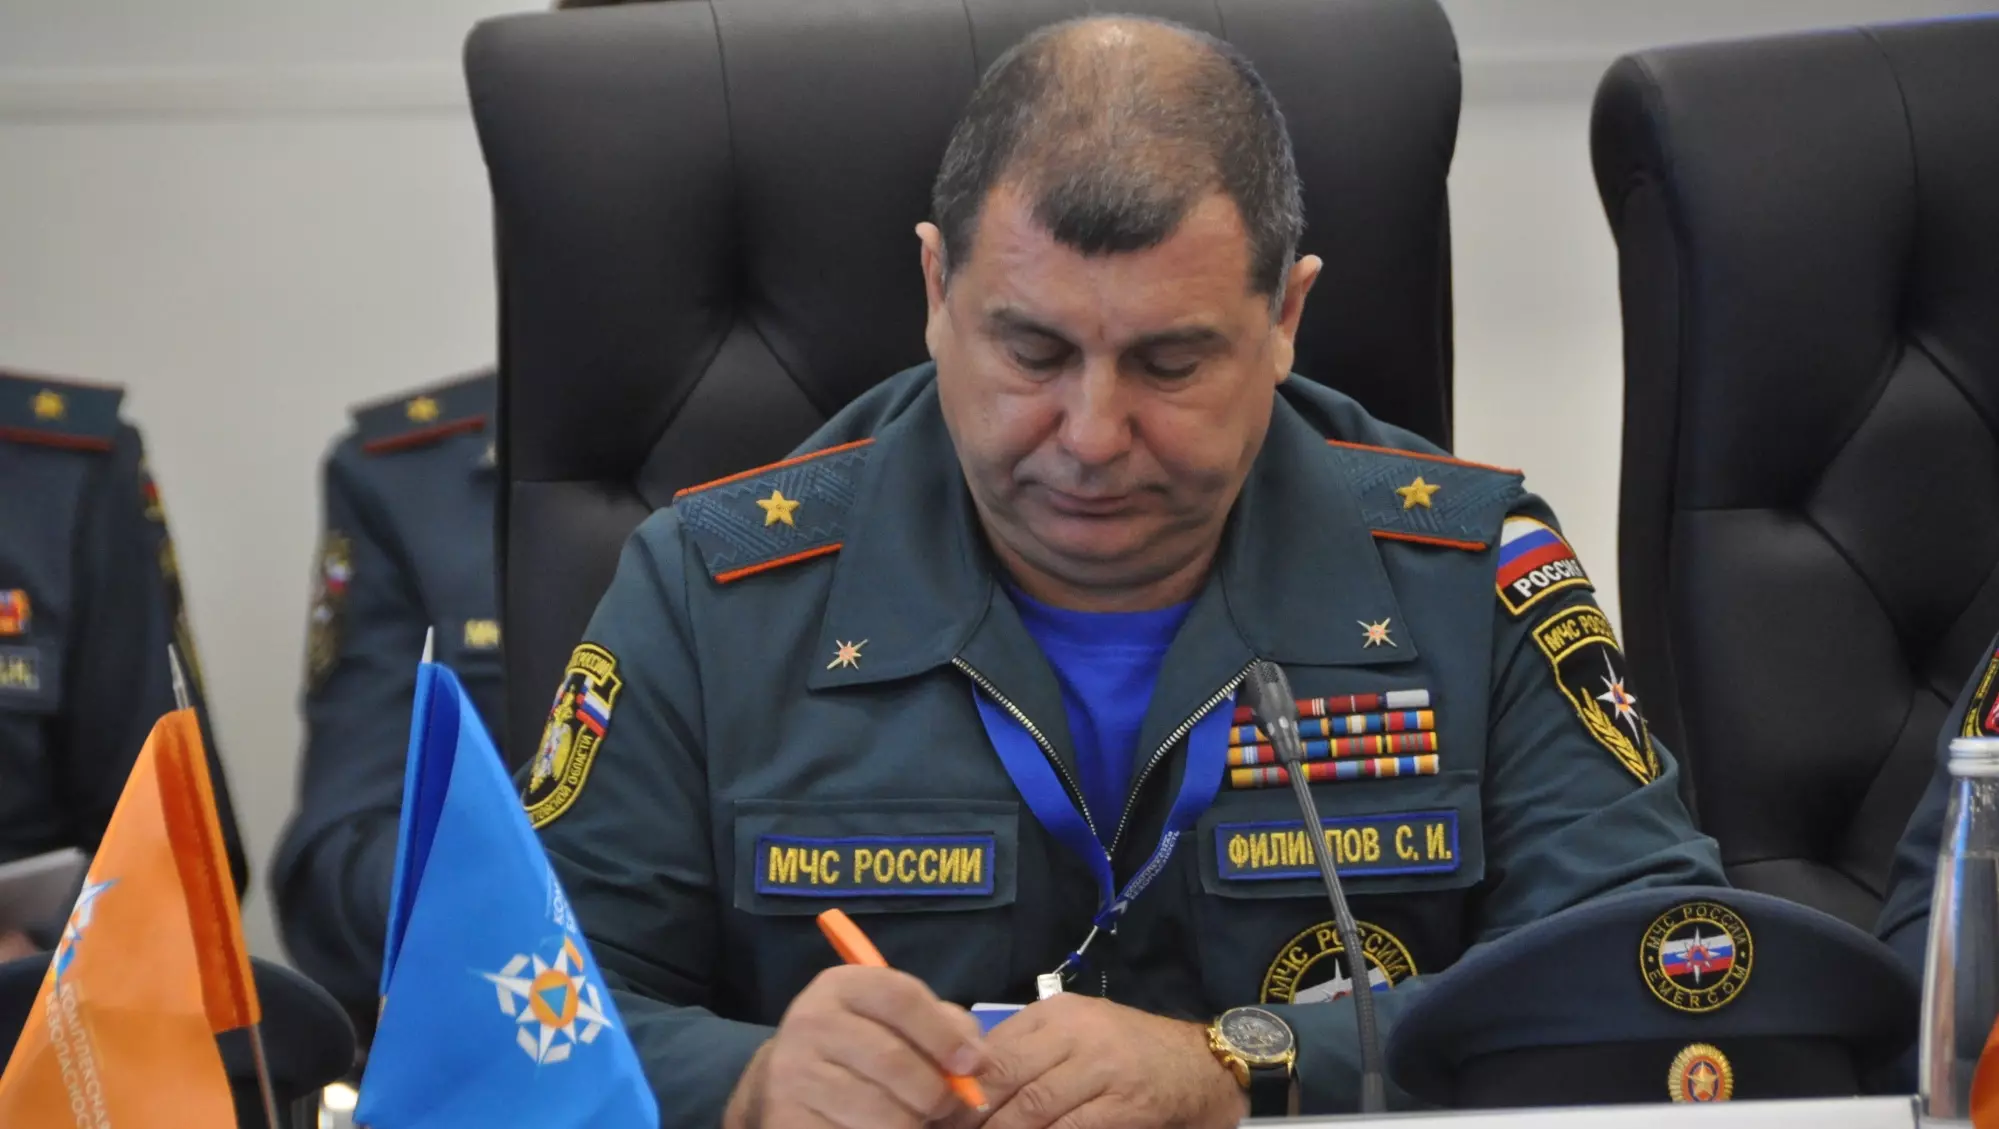 Генерал МЧС в Новошахтинске угнал пожарную машину, чтобы проверить охрану